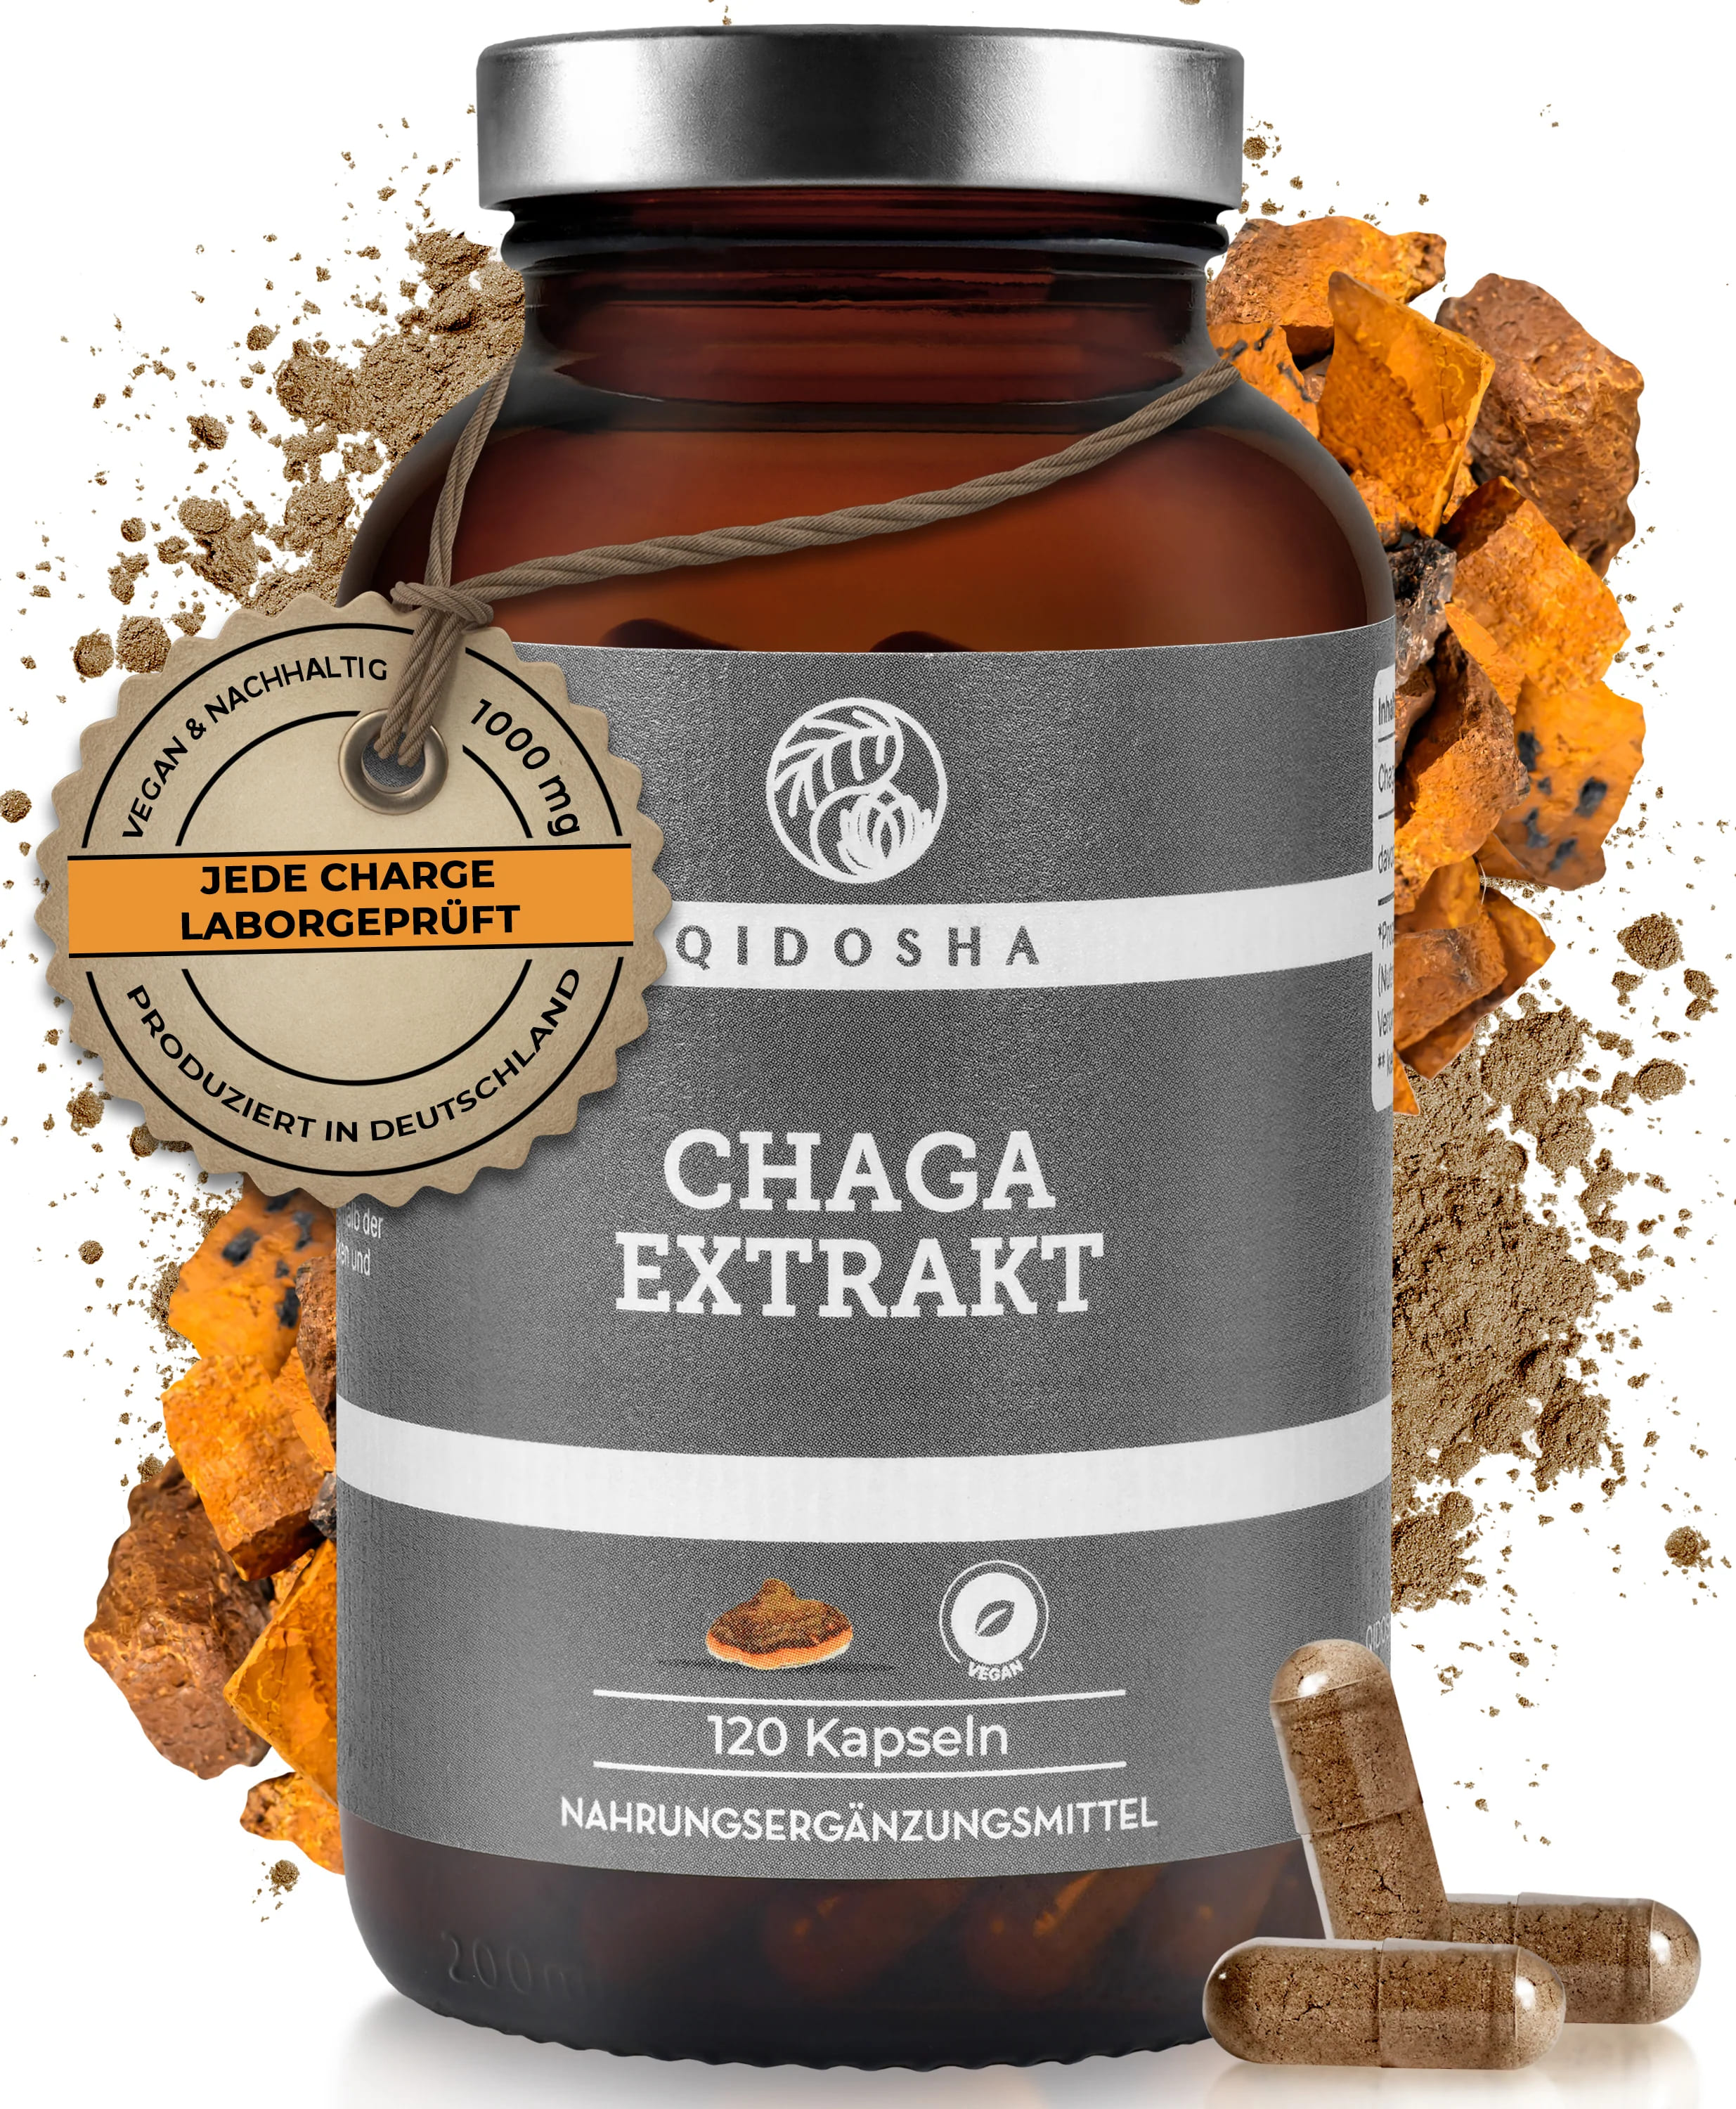 Qidosha Chaga Extrakt | 120 Kapseln